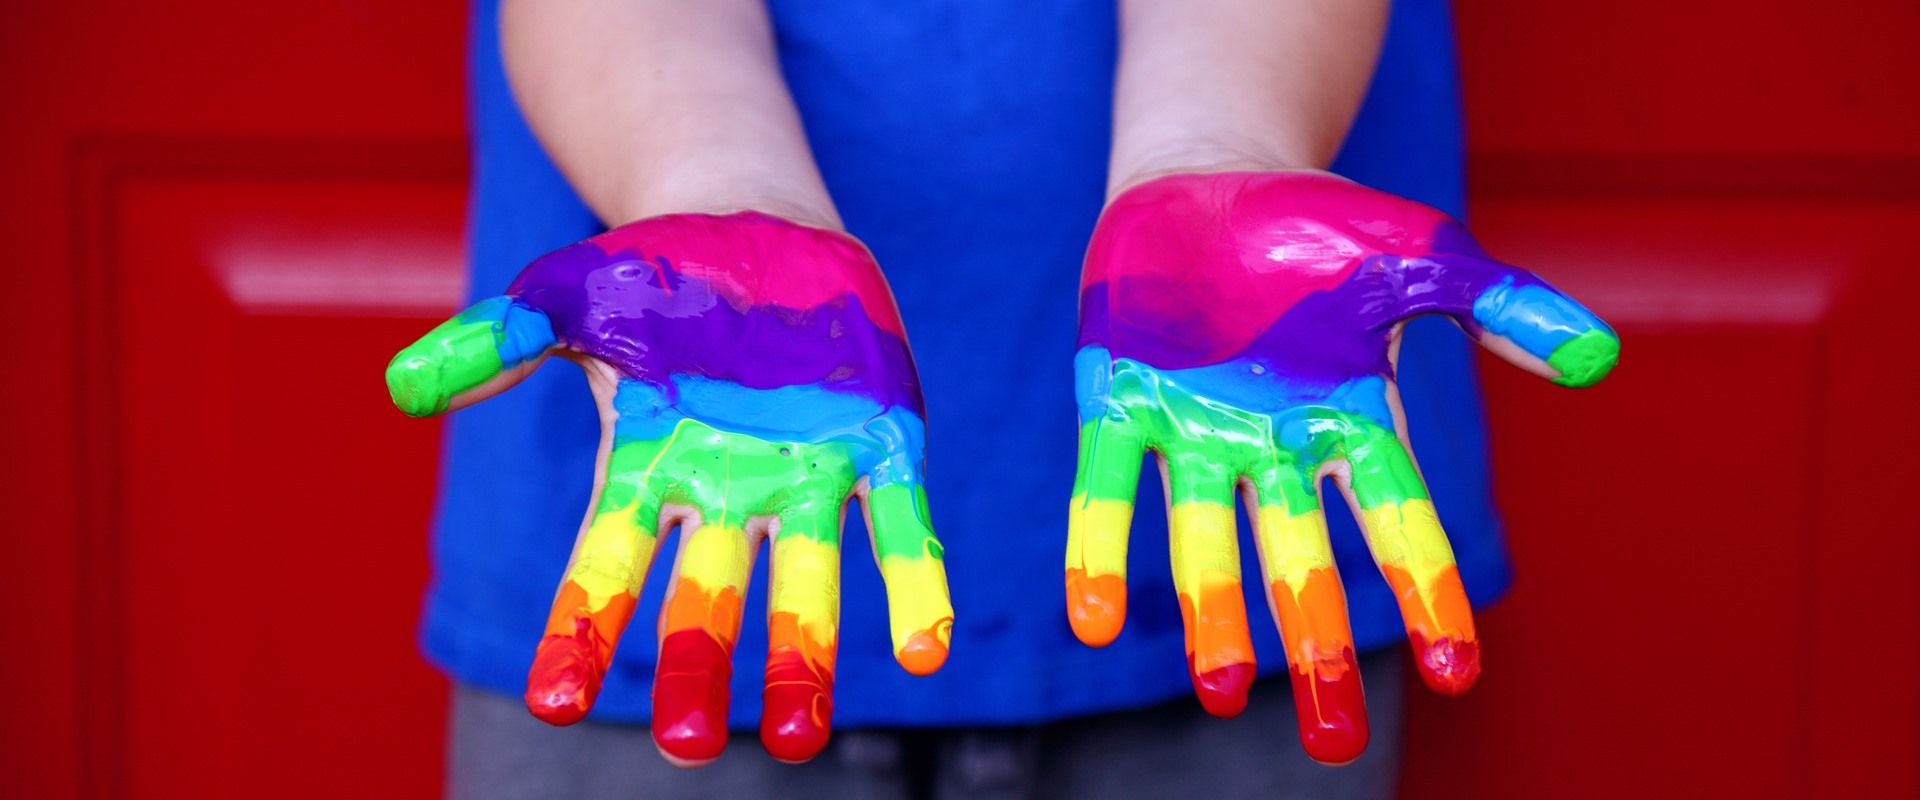 Ein Kind hat mit Fingerfarbe einen Regenbogen auf die Hände gemalt.